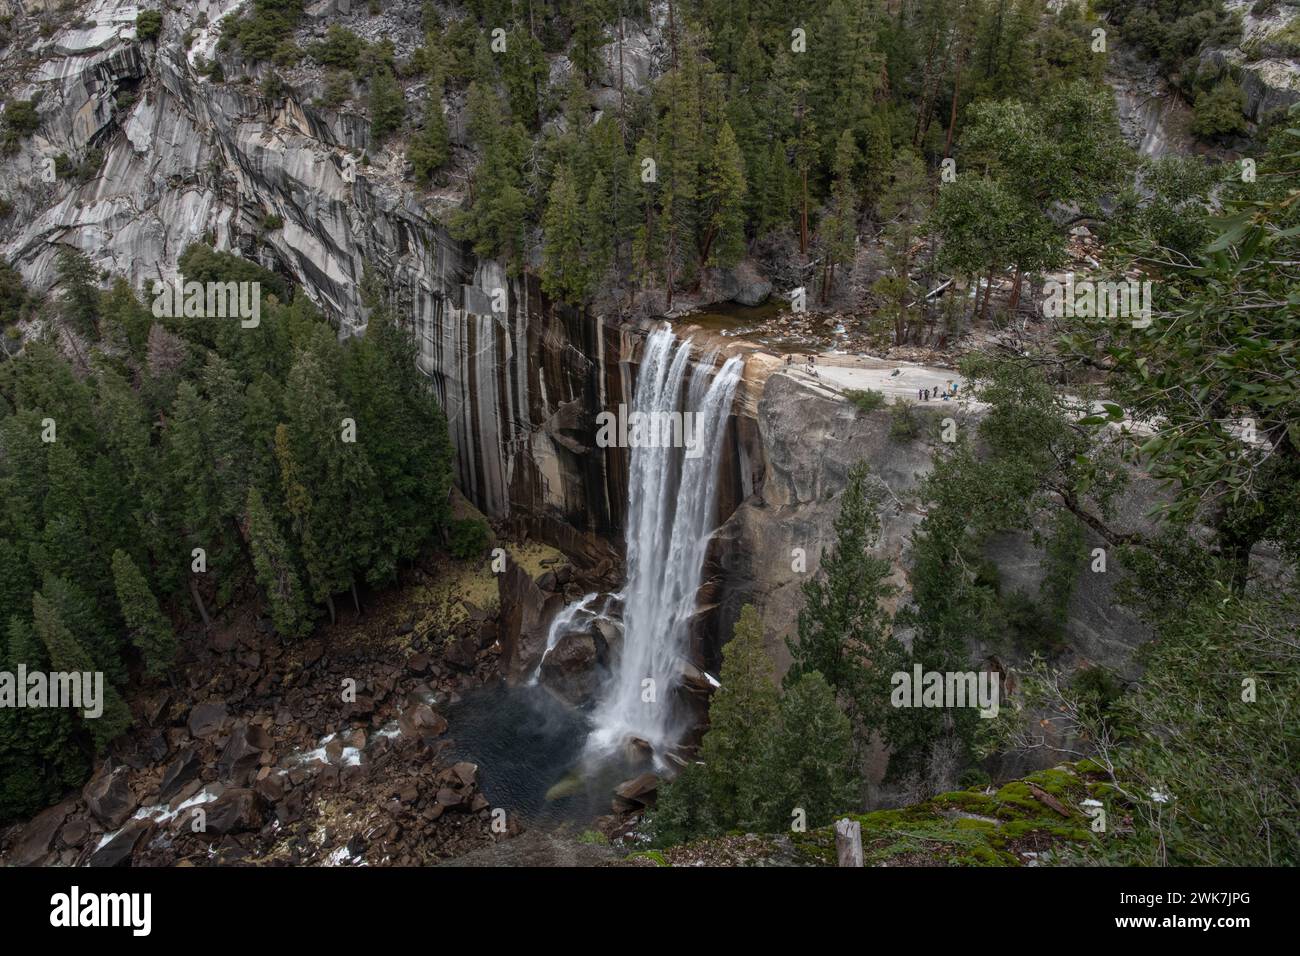 Una vista espectacular del río Merced y las cataratas Vernal en el Parque Nacional Yosemite en las montañas de Sierra Nevada de California, EE.UU., América del Norte. Foto de stock